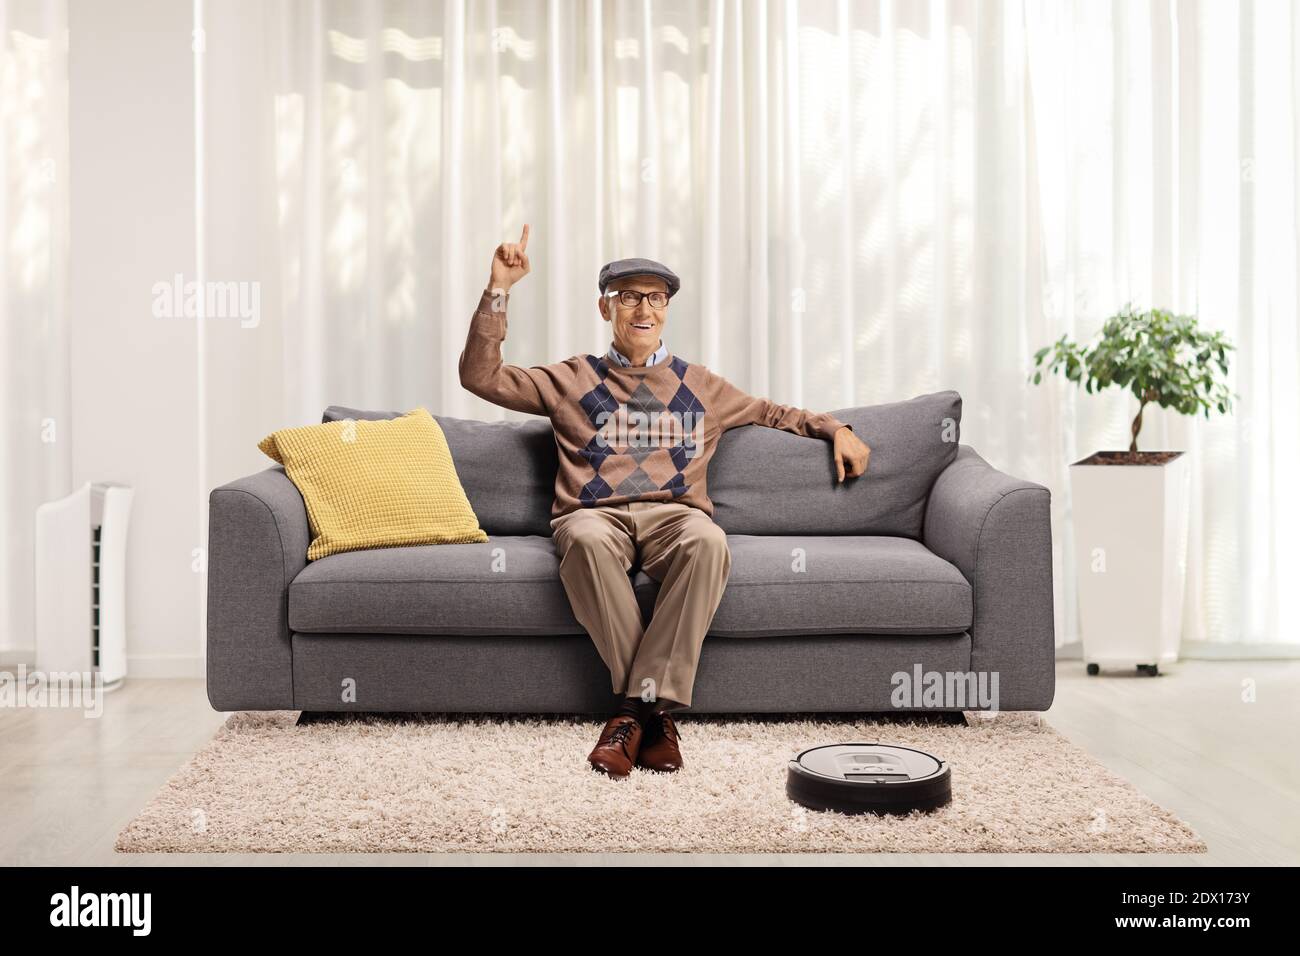 Lächelnder älterer Mann, der zu Hause auf einem Sofa sitzt, nach oben zeigt und ein Roboter-Staubsauger den Teppich staubt Stockfoto